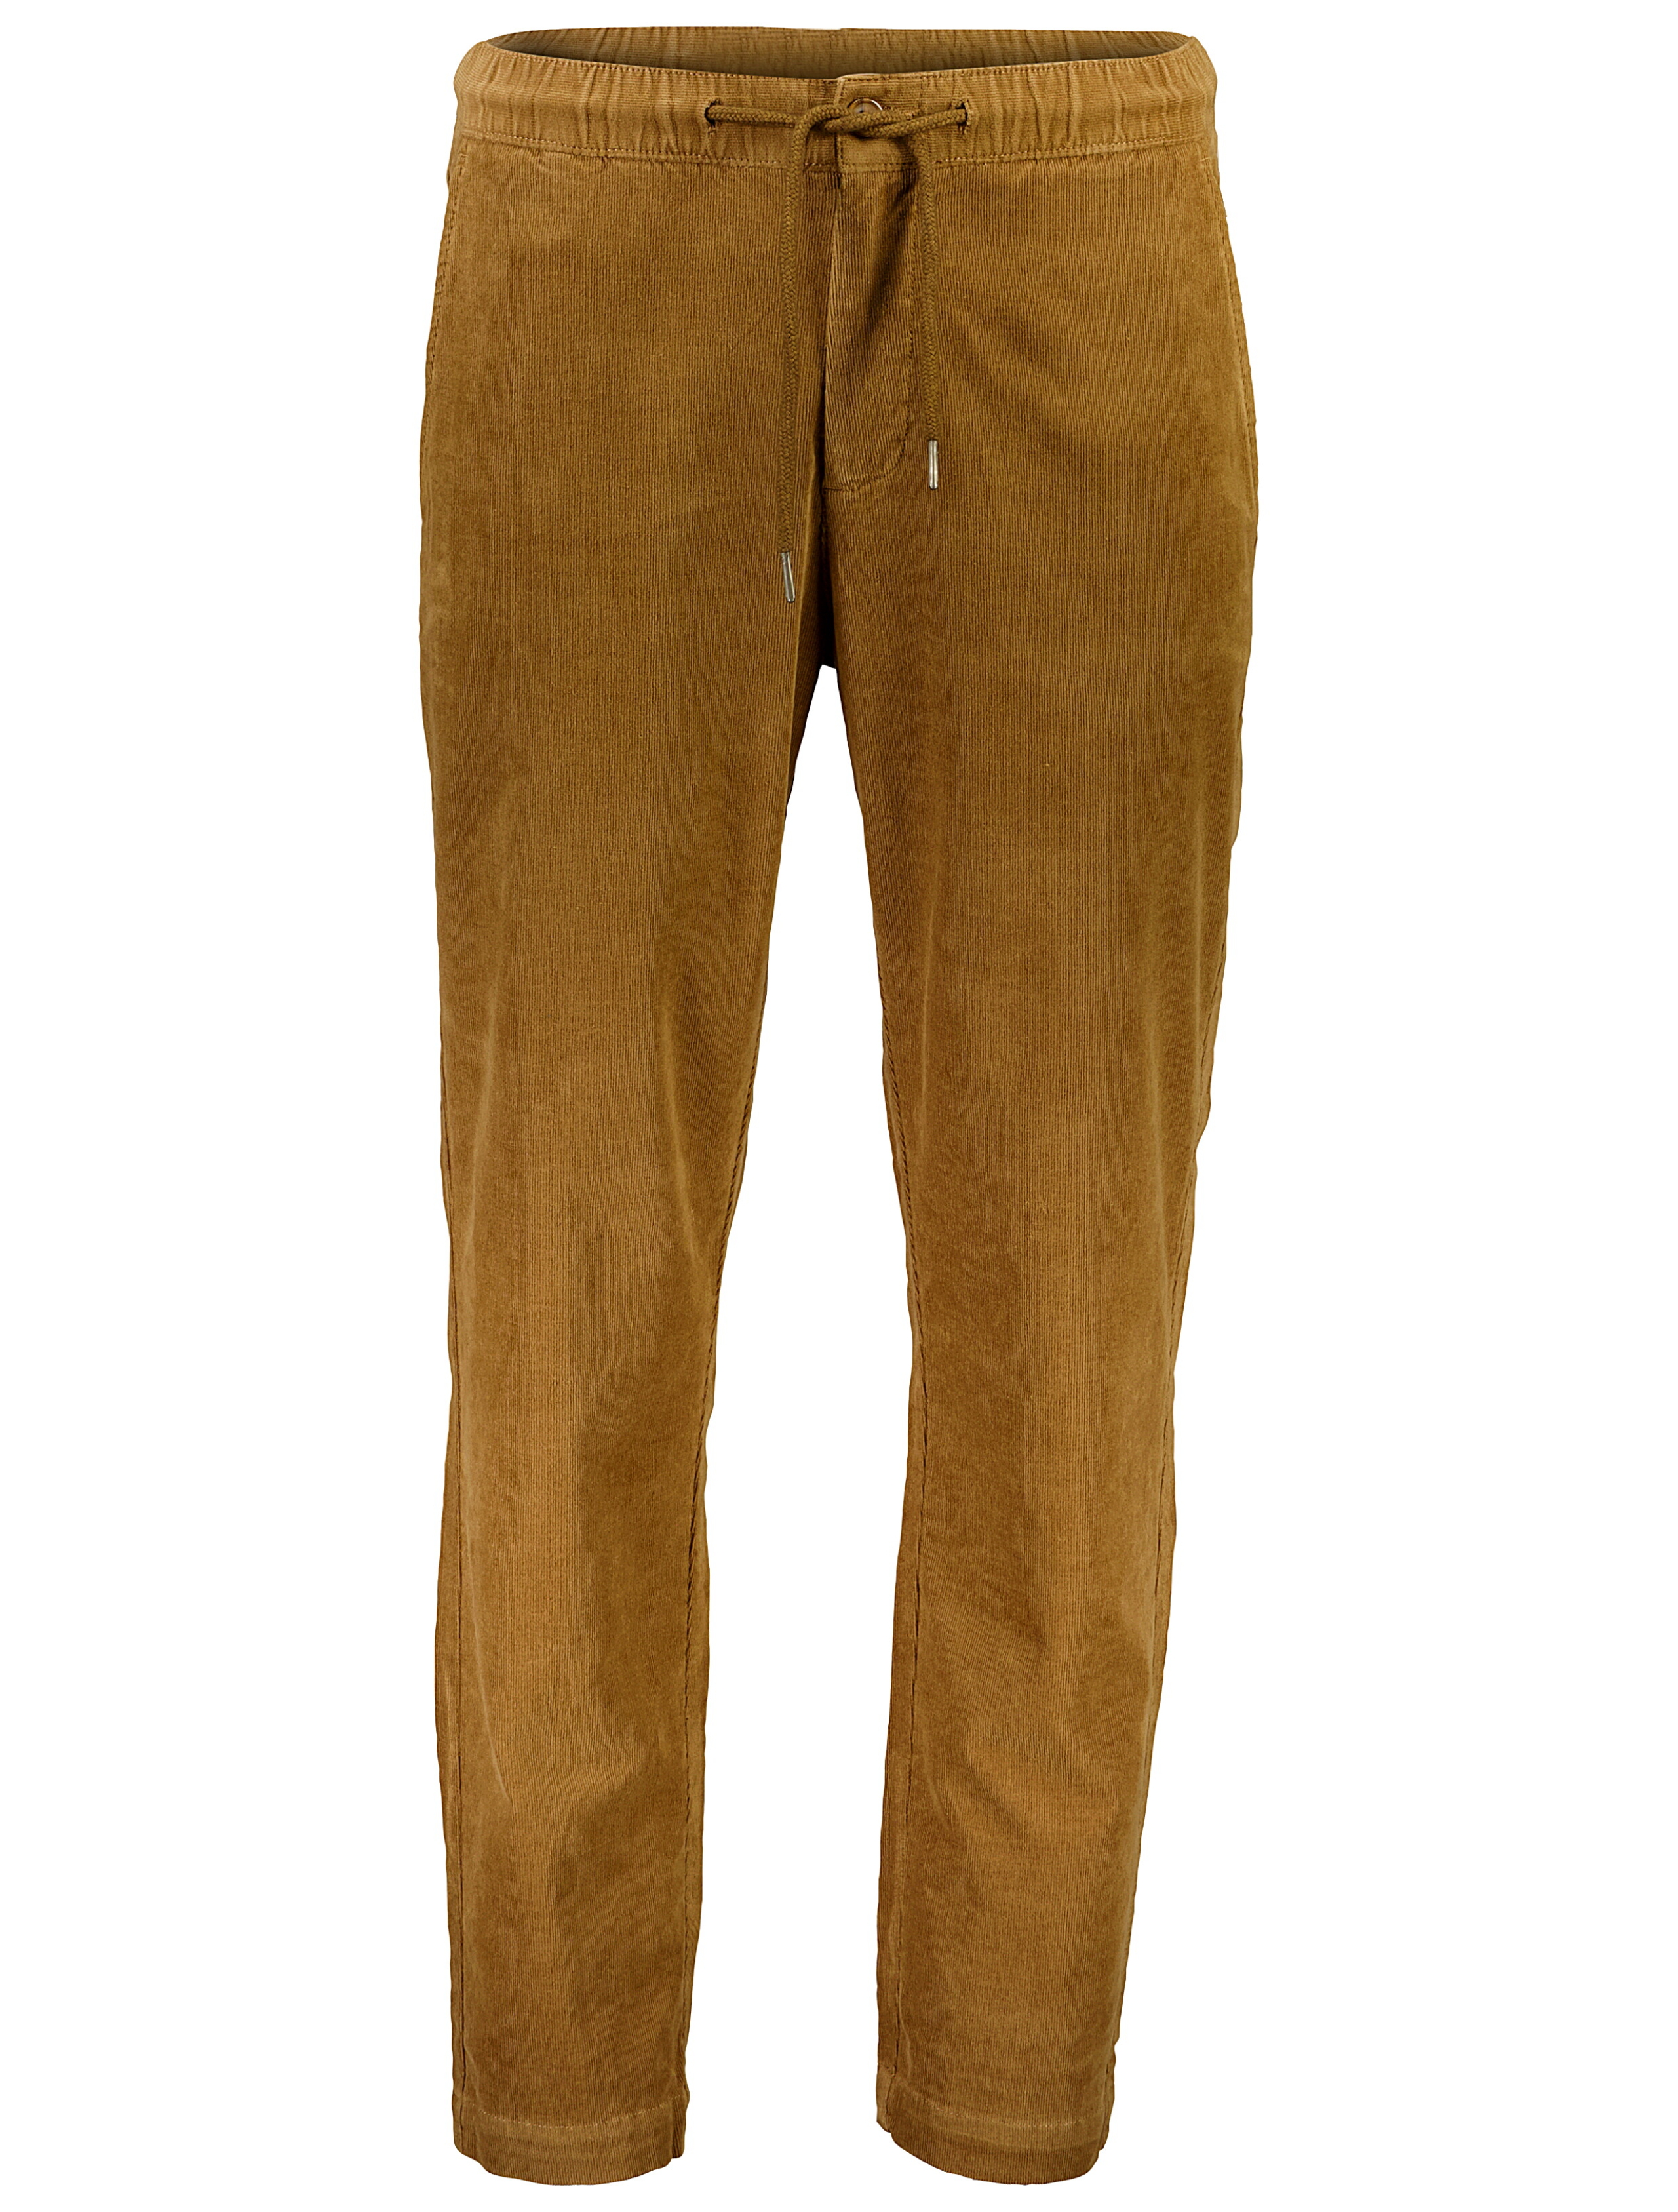 Lindbergh Casual bukser brun / mid brown